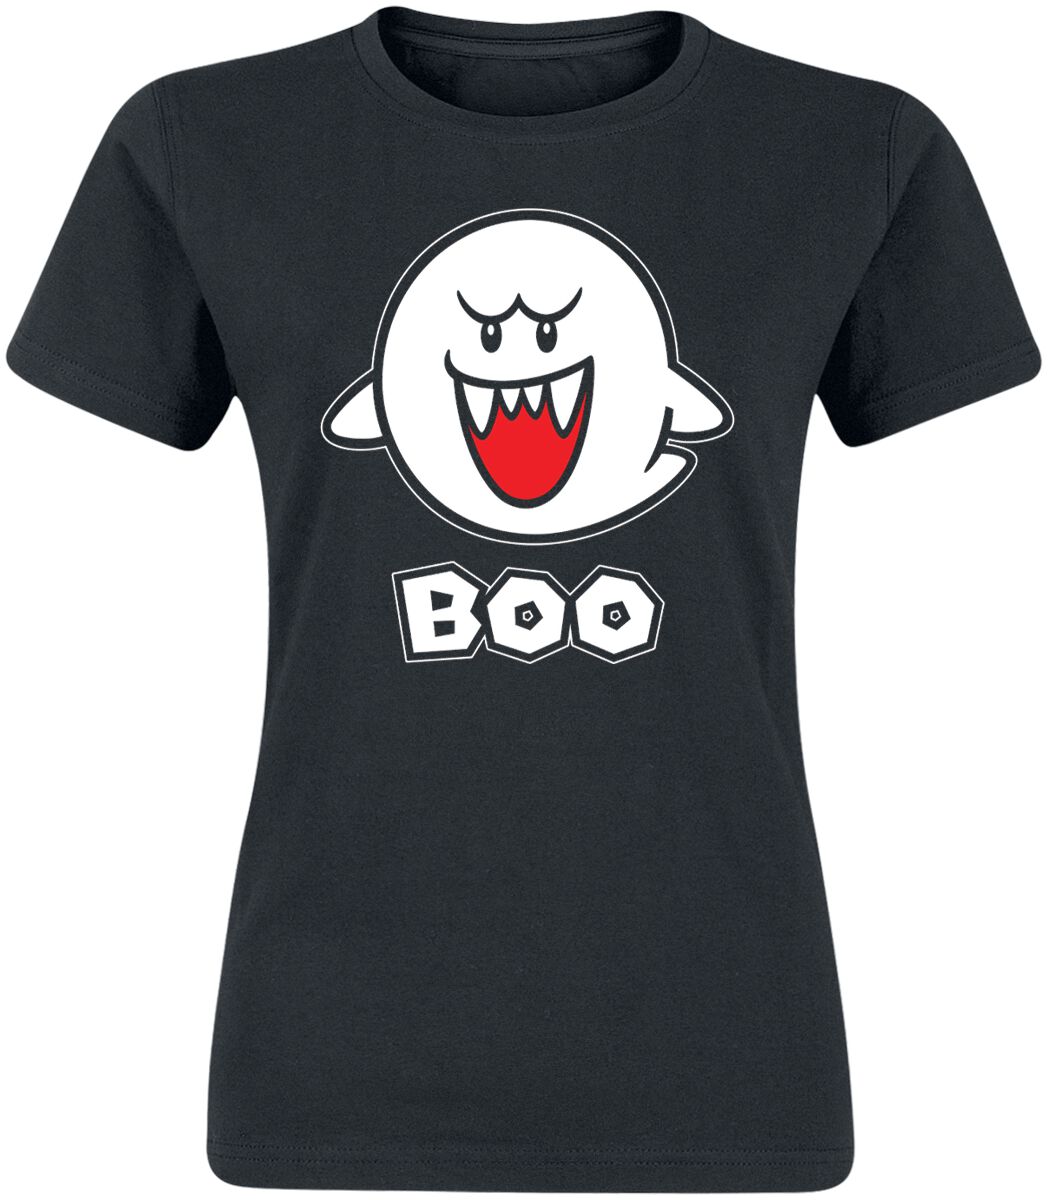 T-Shirt Manches courtes Gaming de Super Mario - Boo - S à XXL - pour Femme - noir